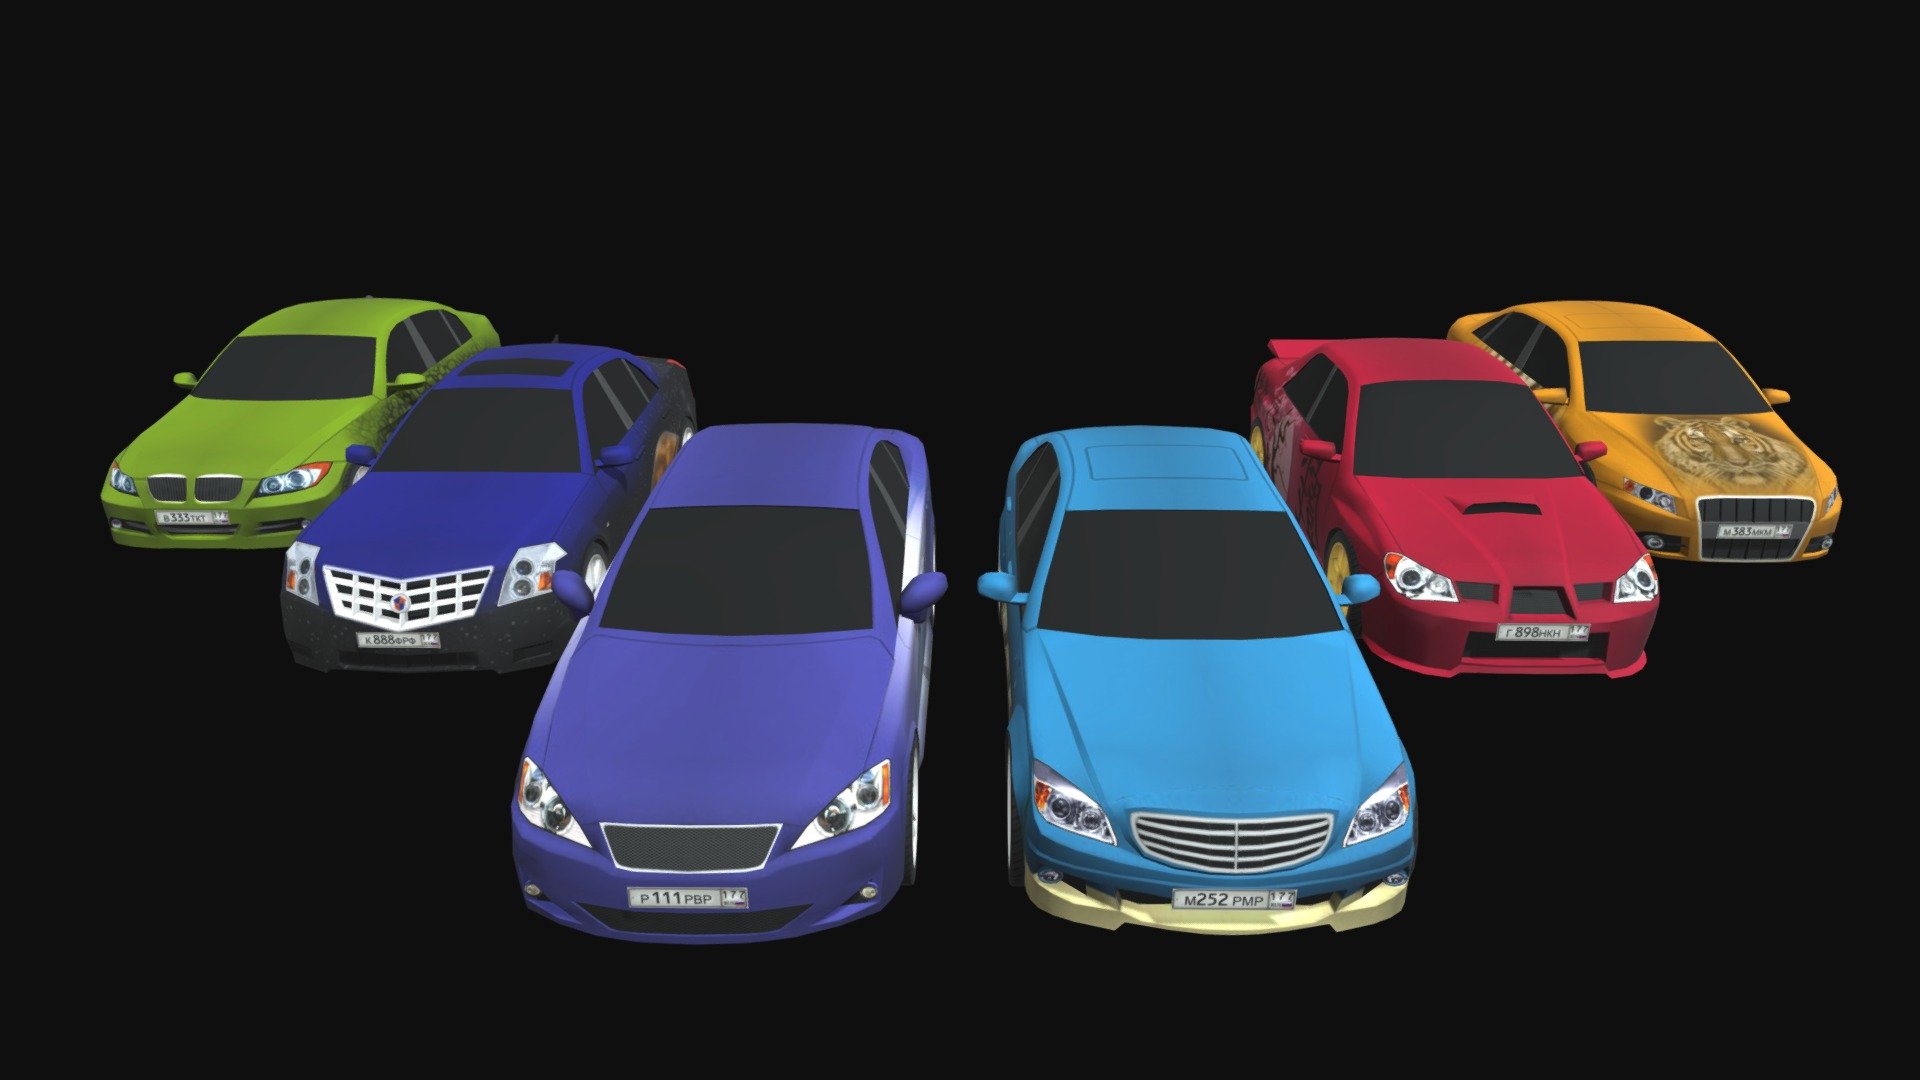 6 cars:


Subaru Impreza
Mercedes-Benz C-Class
BMW 330i
Cadillac BLS
Audi A4
Lexus IS250

3 different car skins 3d model